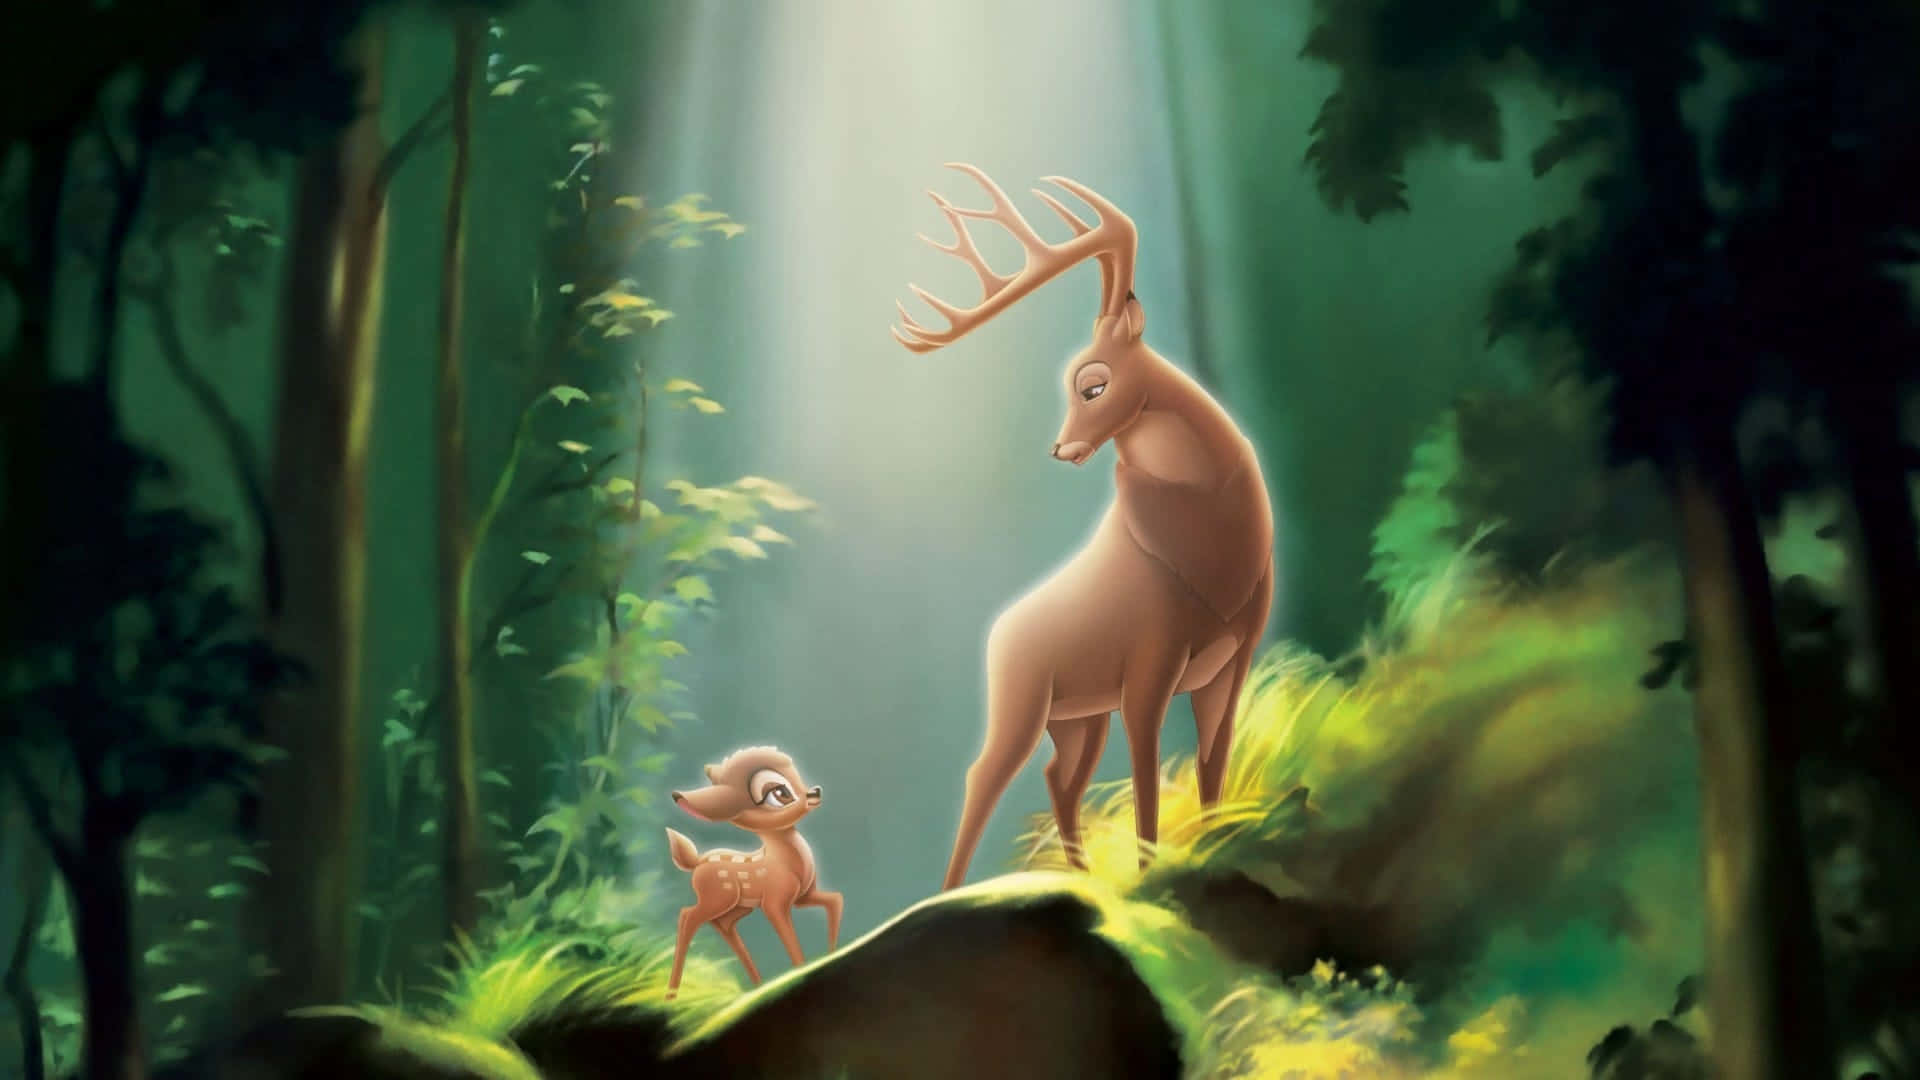 Einniedlicher Bambi In Einer Wiese, Begrüßt Das Publikum Mit Einem Warmen Lächeln.